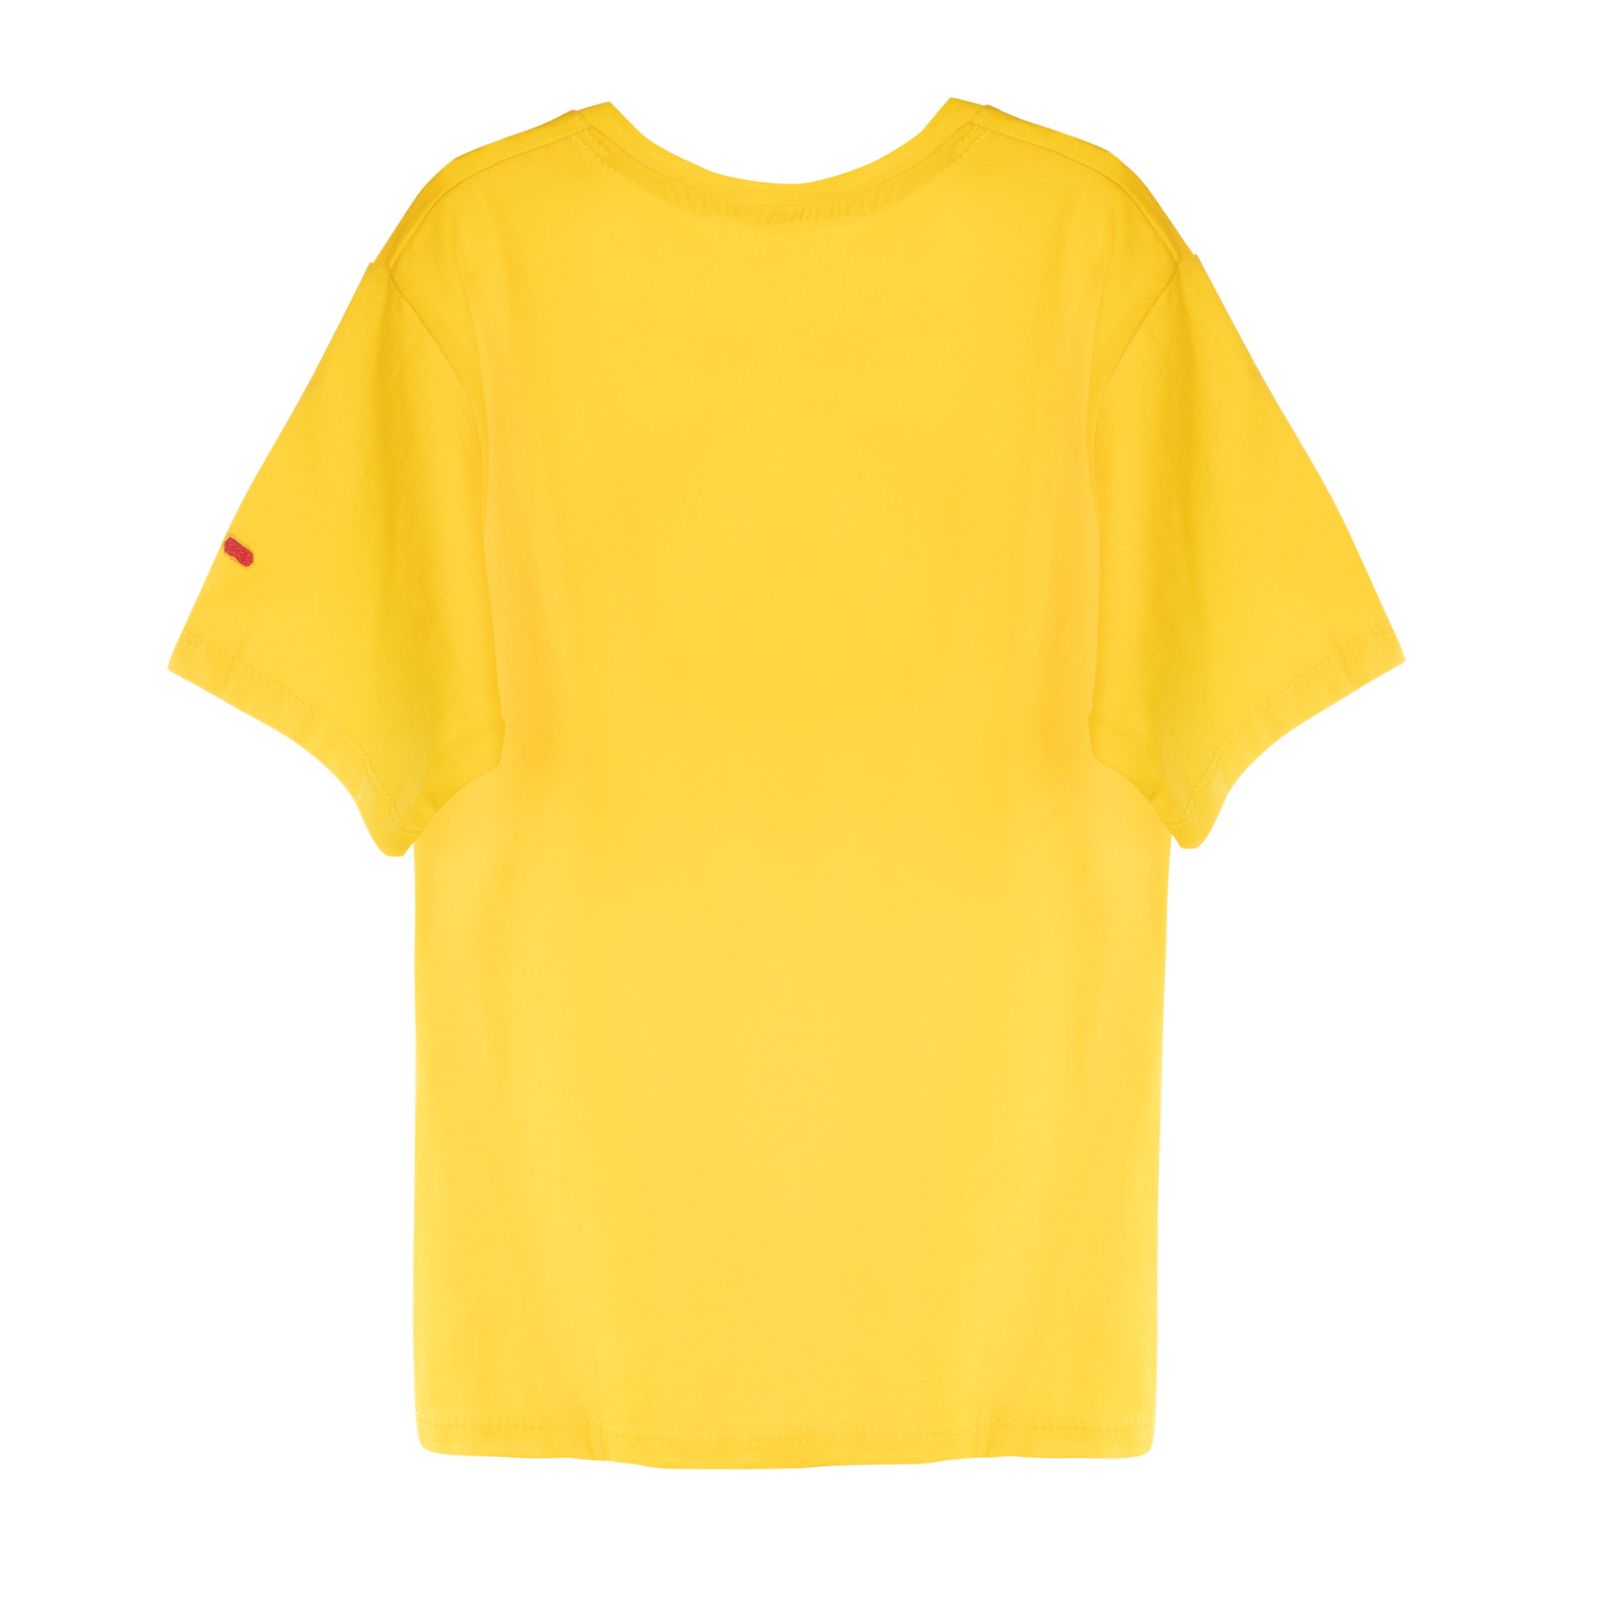 تی شرت آستین کوتاه دخترانه مادر مدل pineapple رنگ زرد -  - 2